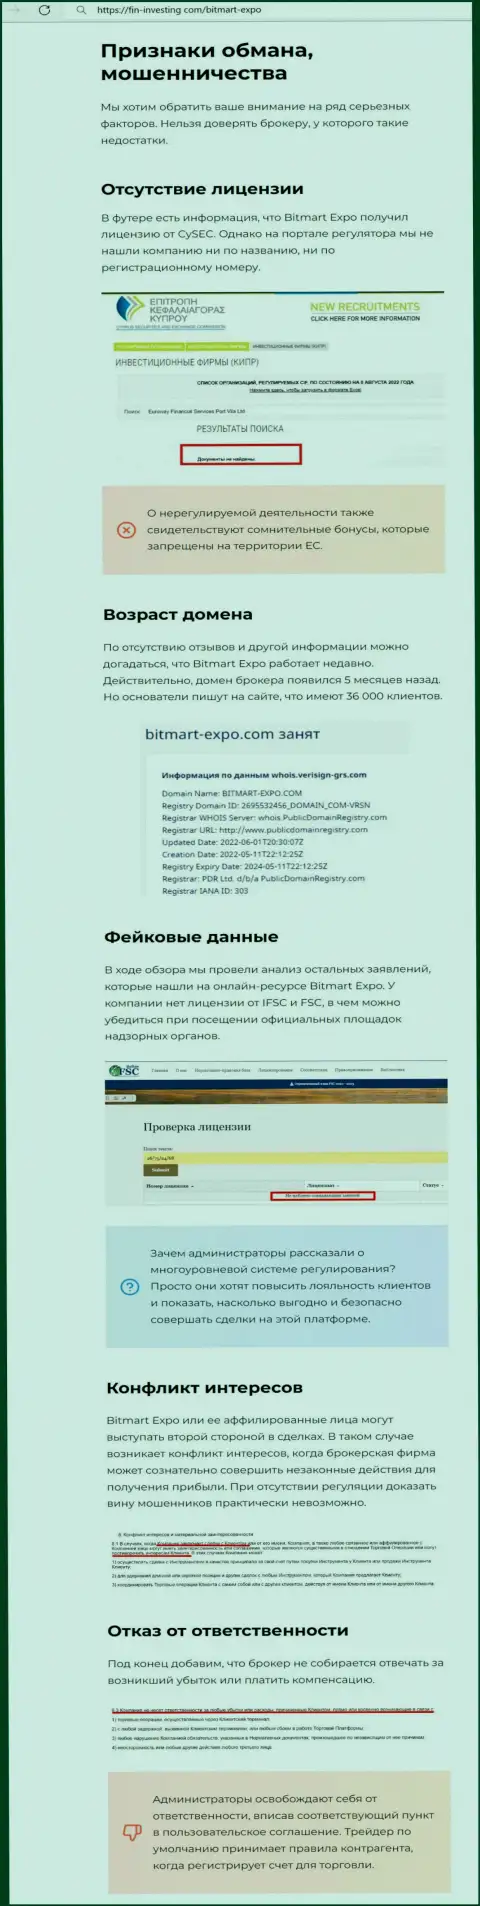 Обзорная публикация о мошеннических условиях совместной работы в организации Bitmart Expo